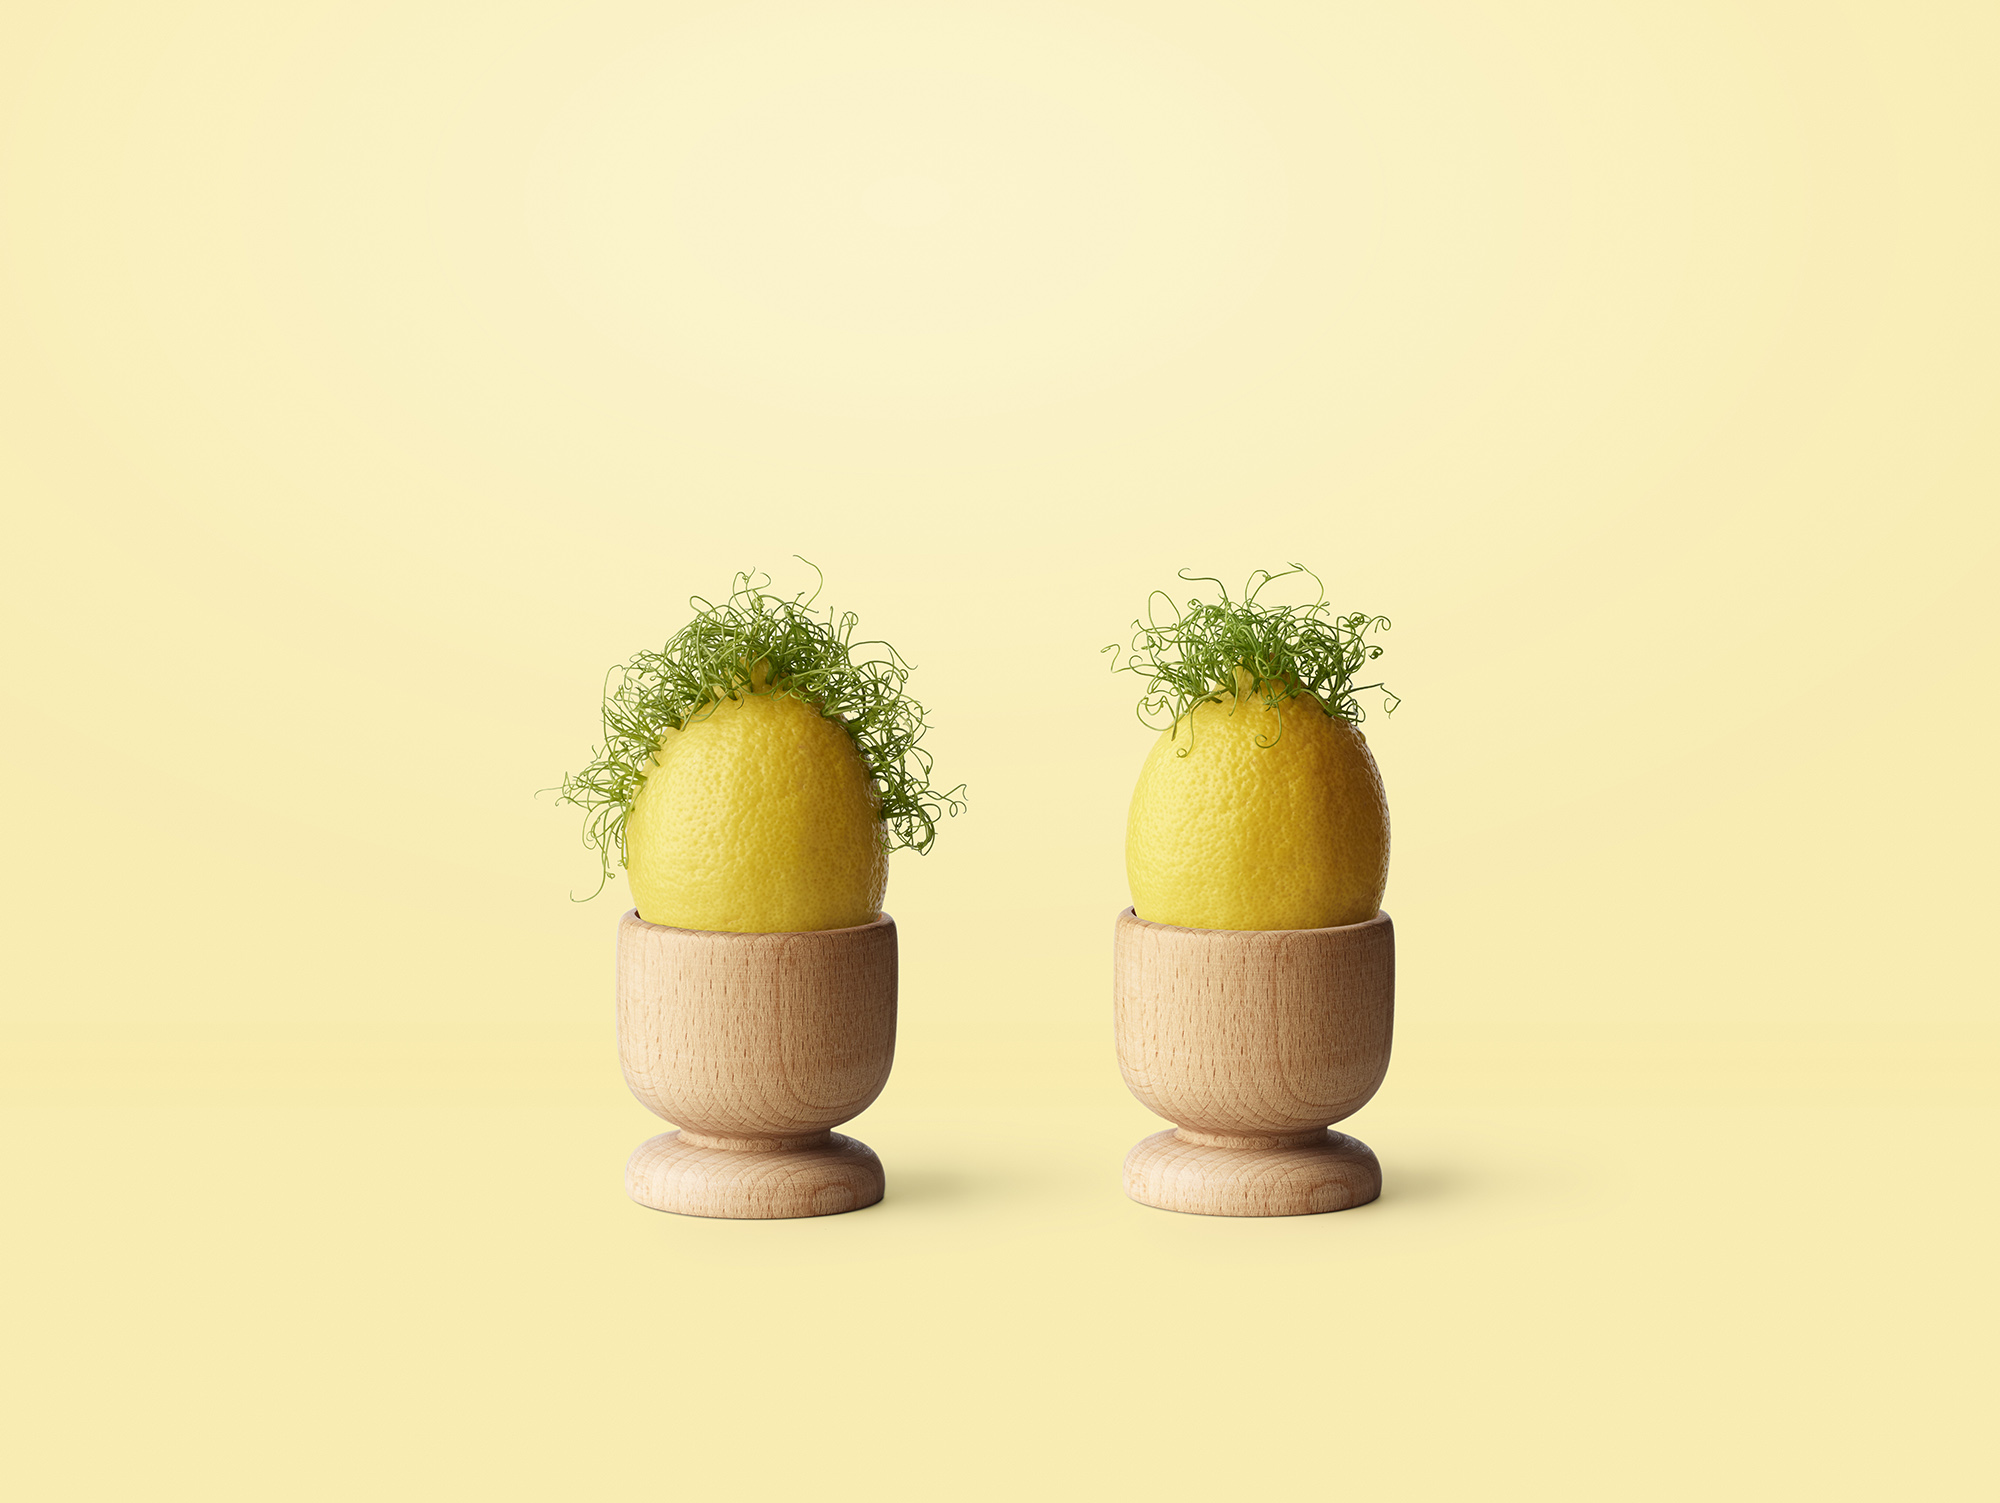 Chelsea Bloxsome | Food Photographer London 171118 PetitChef concept Lemon 0028